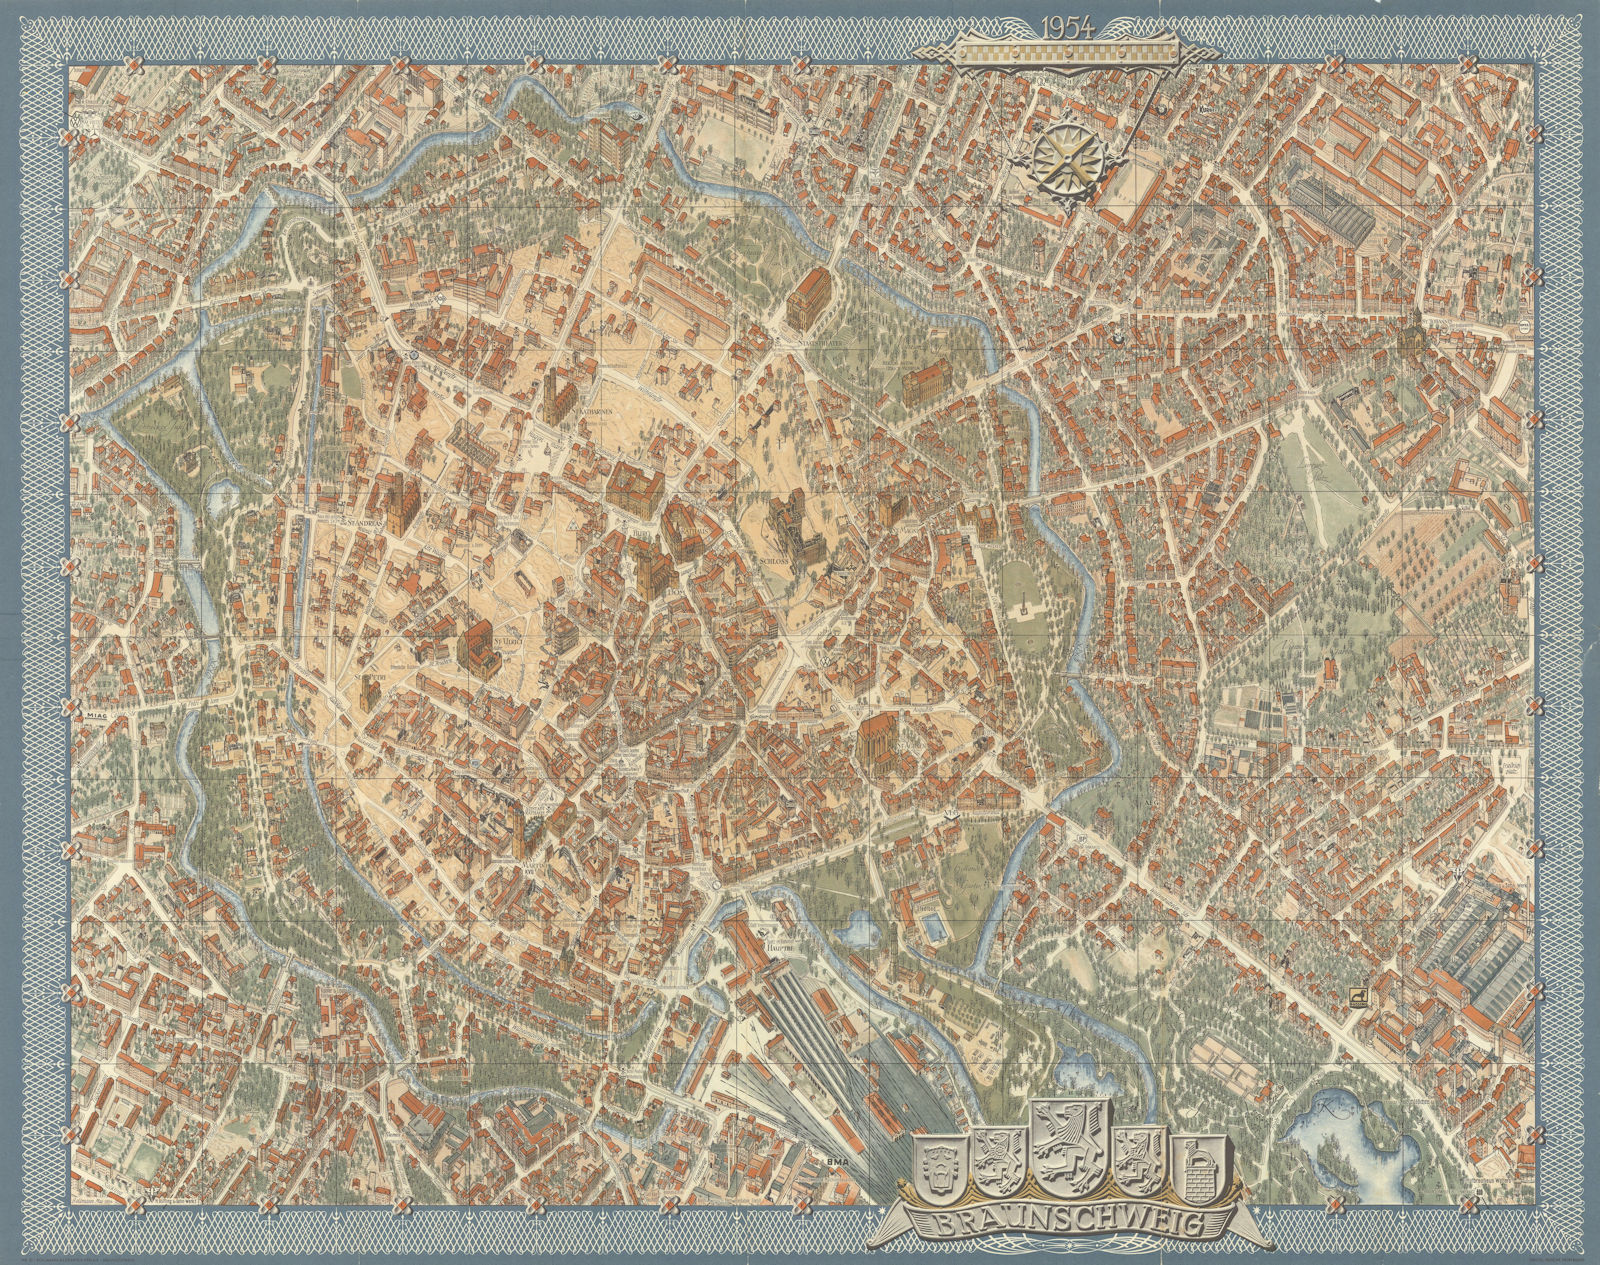 Braunschweig Brunswick pictorial bird's eye view city plan #10 BOLLMANN 1954 map